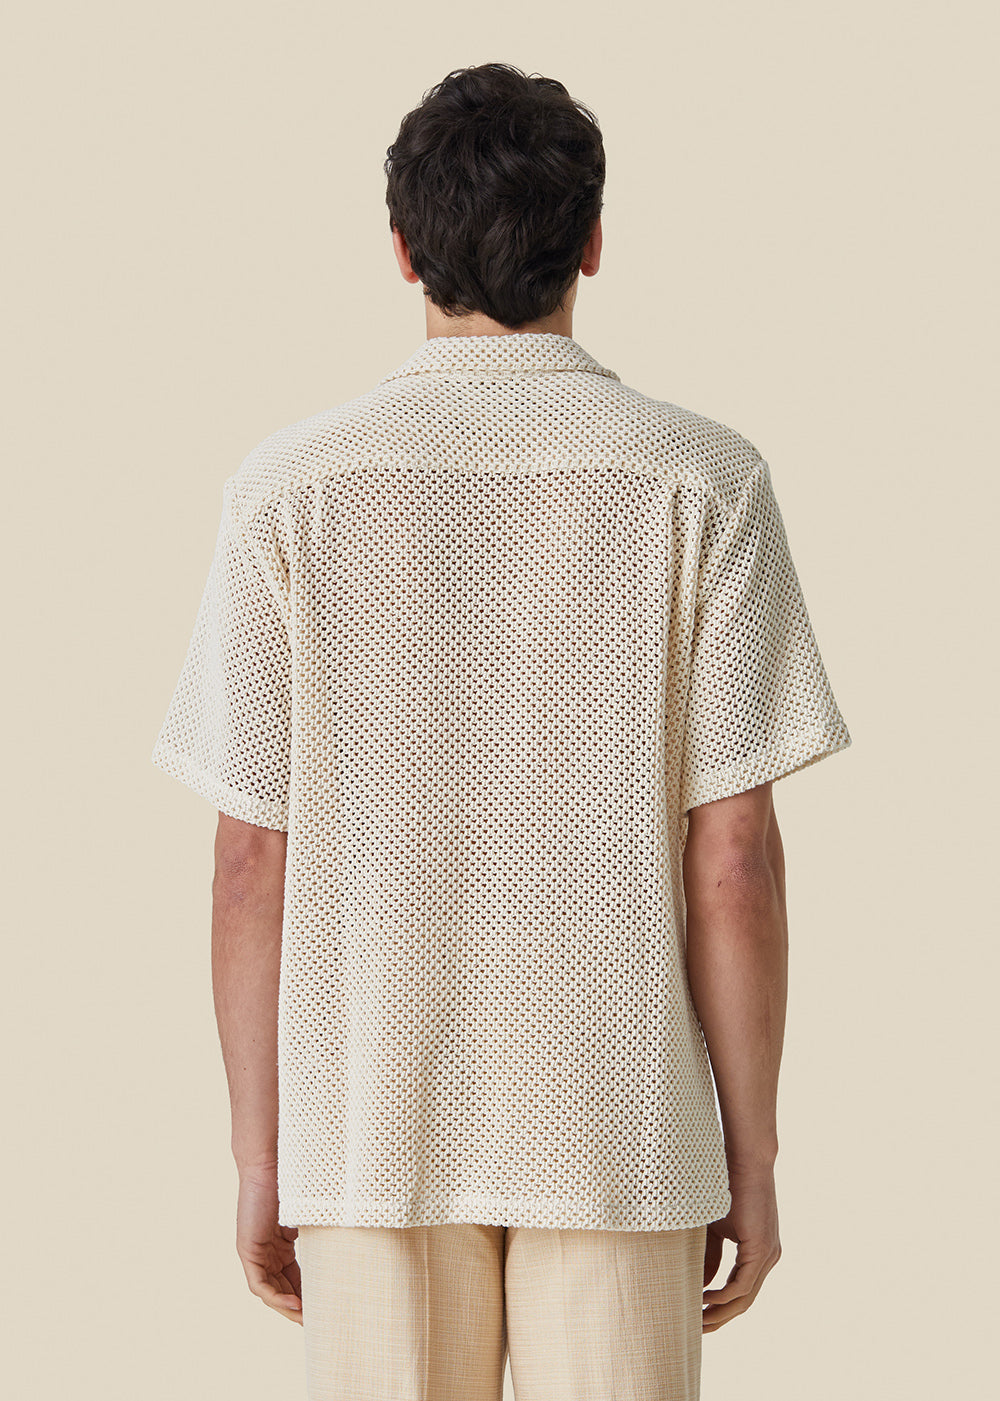 Knit Shirt - Off White - Portuguese Flannel Canada - Danali